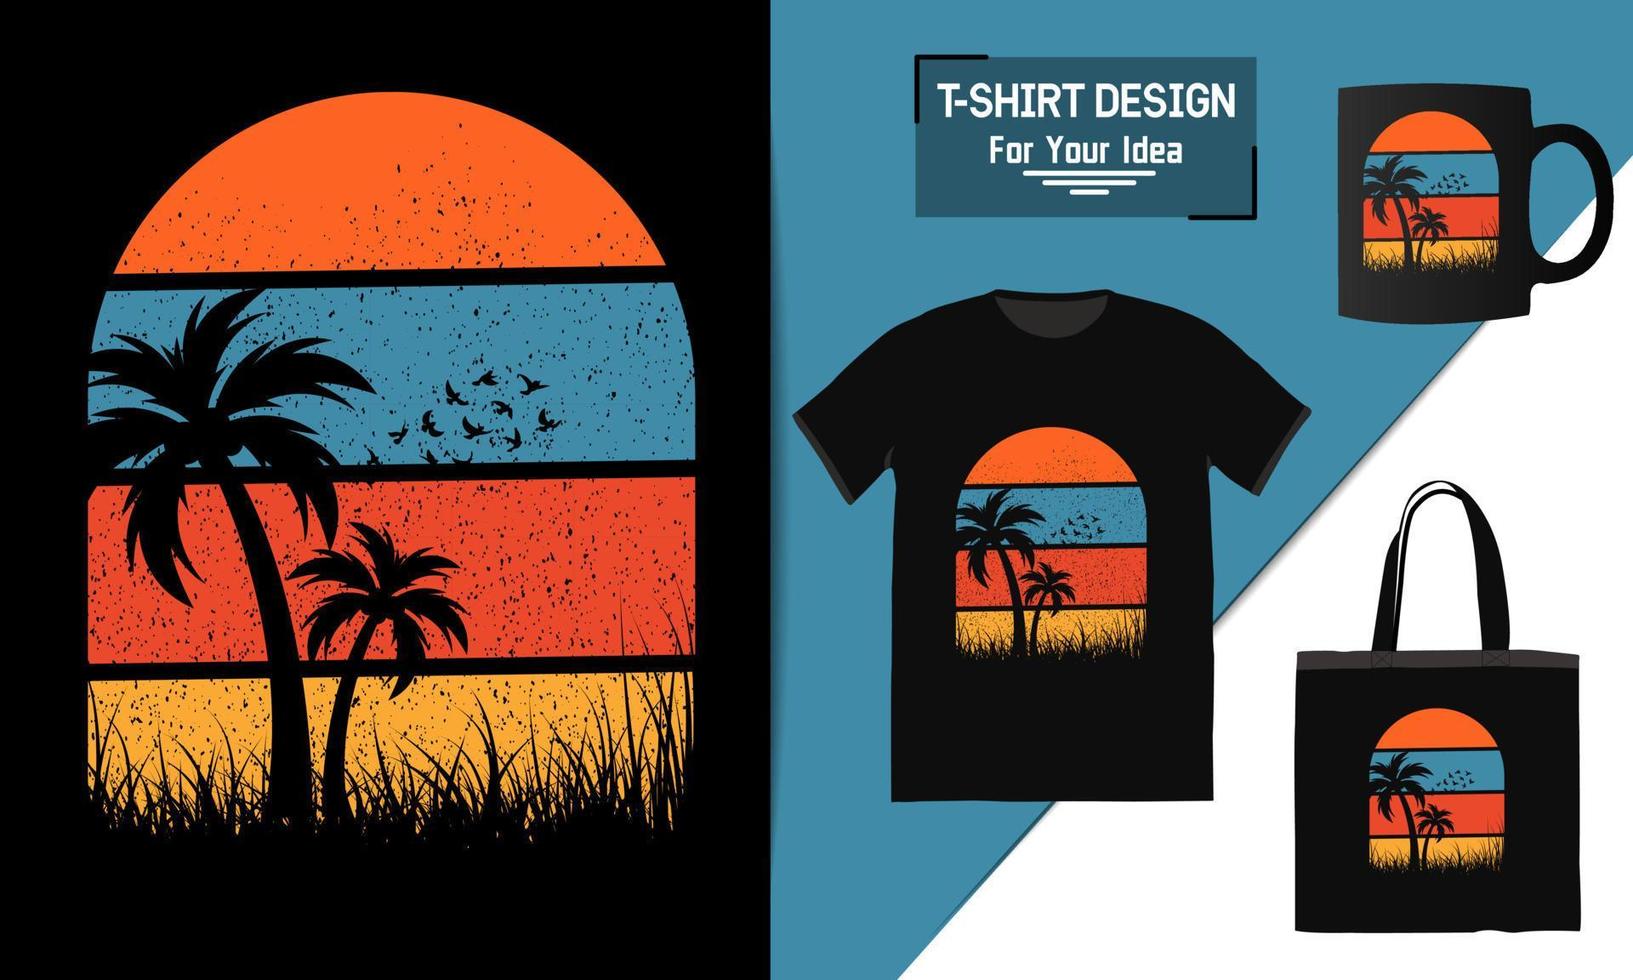 verano elegante camiseta playa árbol vector diseño playa fiesta impresiones sobre el tema